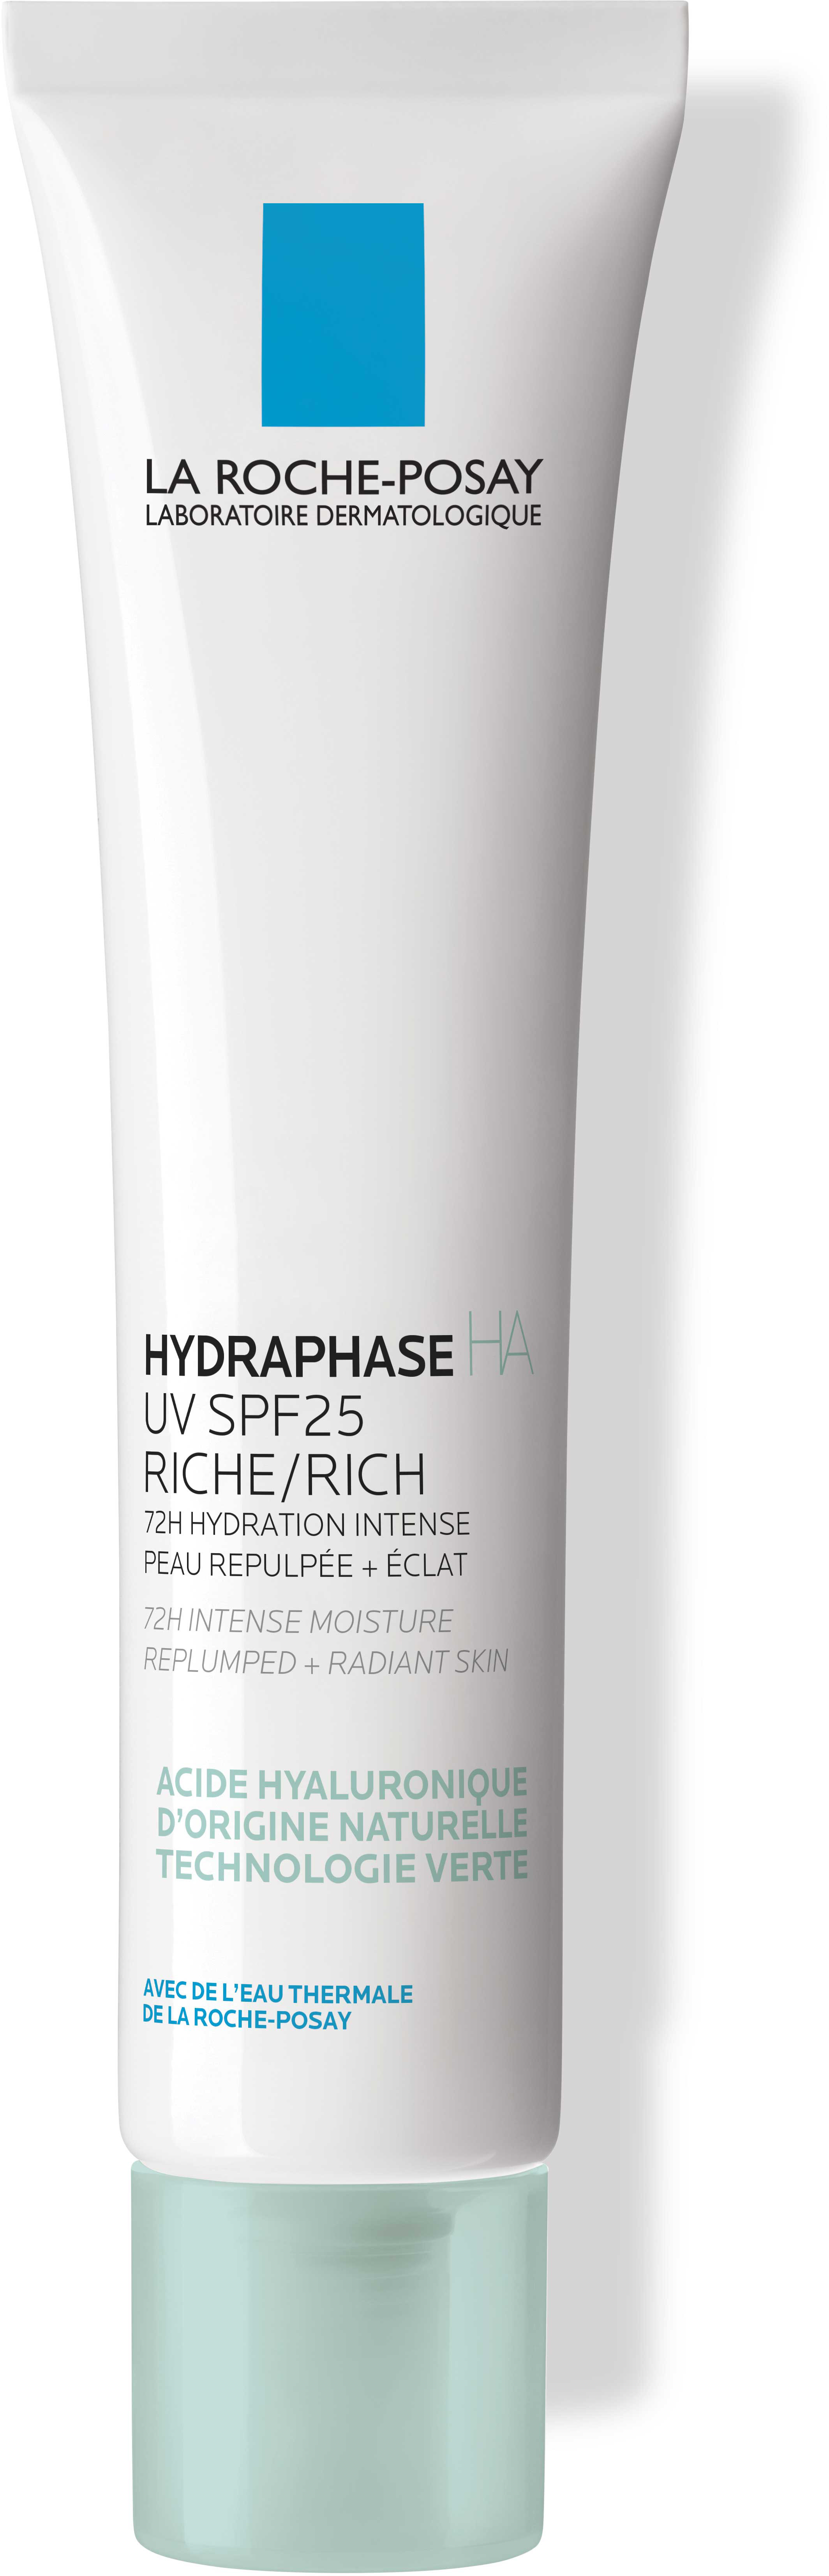 La Roche-Posay Hydraphase HA UV SPF25 Riche 40 ml